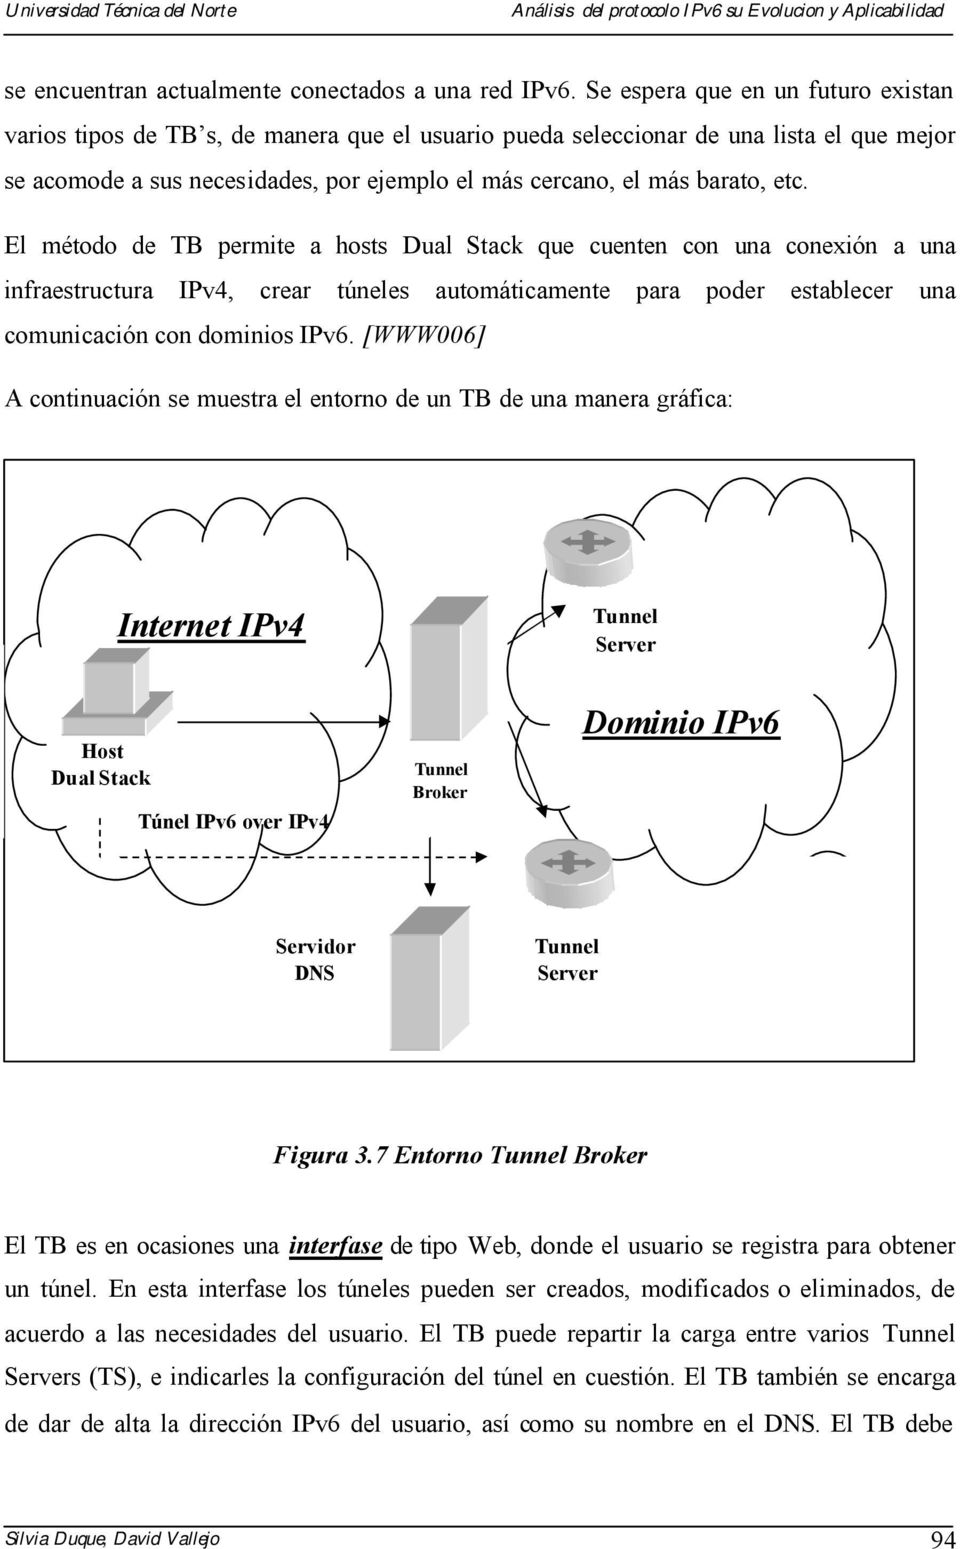 etc. El método de TB permite a hosts Dual Stack que cuenten con una conexión a una infraestructura IPv4, crear túneles automáticamente para poder establecer una comunicación con dominios IPv6.